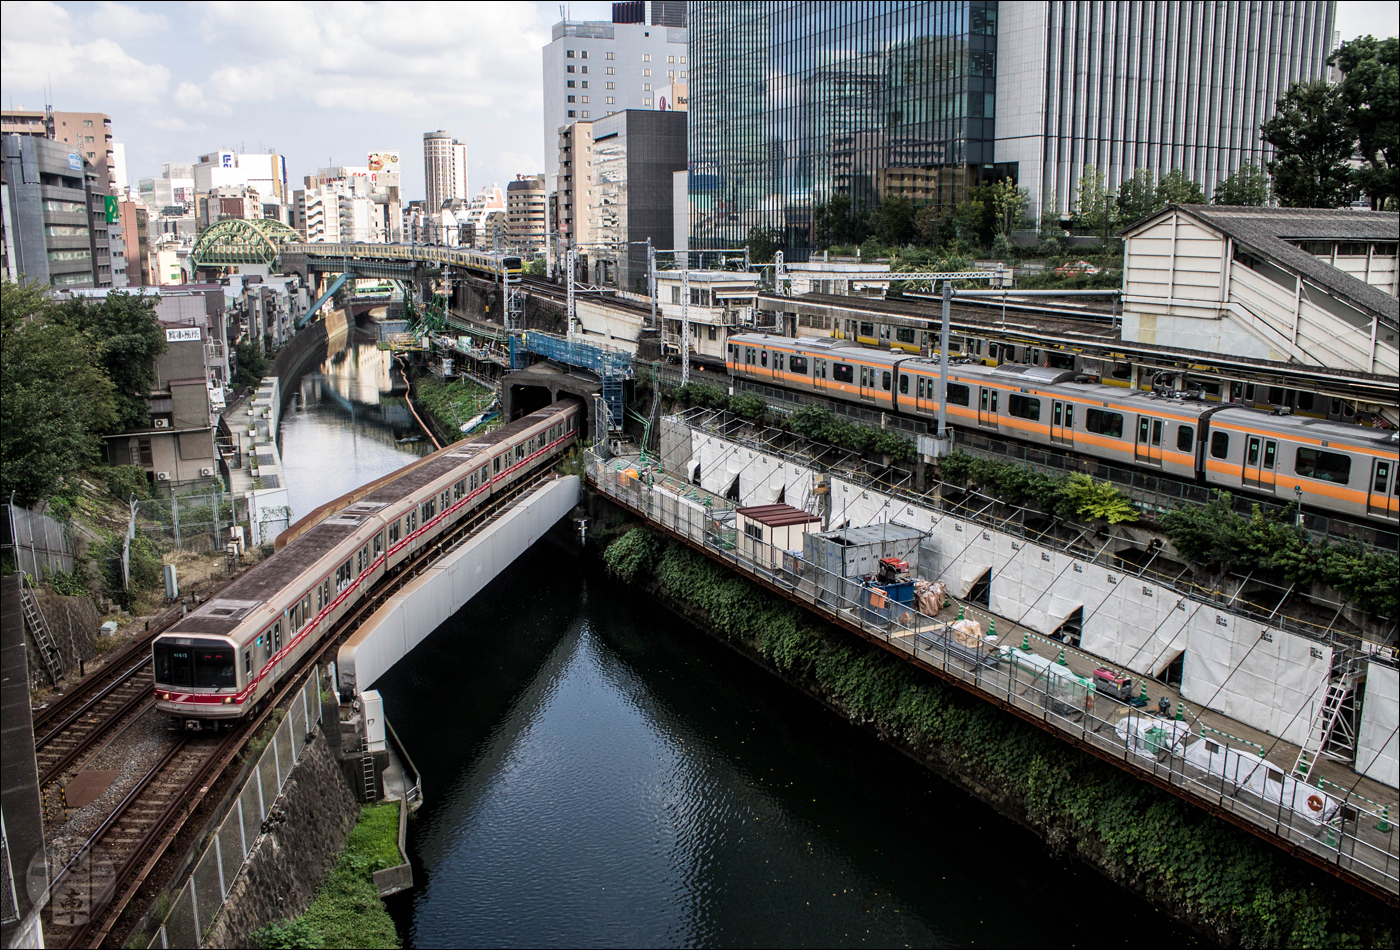 Nemcsak Tokyo, hanem valószínűleg egész Japán egyik legikonikusabb vasúti csomópontja Ochanomizu állomás közelében, a Kanda-folyó felett átívelő hídról nézve. Itt JR részéről a Chuo és Sobu vonalak, Tokyo Metro részéről pedig a Marunouchi vonal keresztezik egymást.